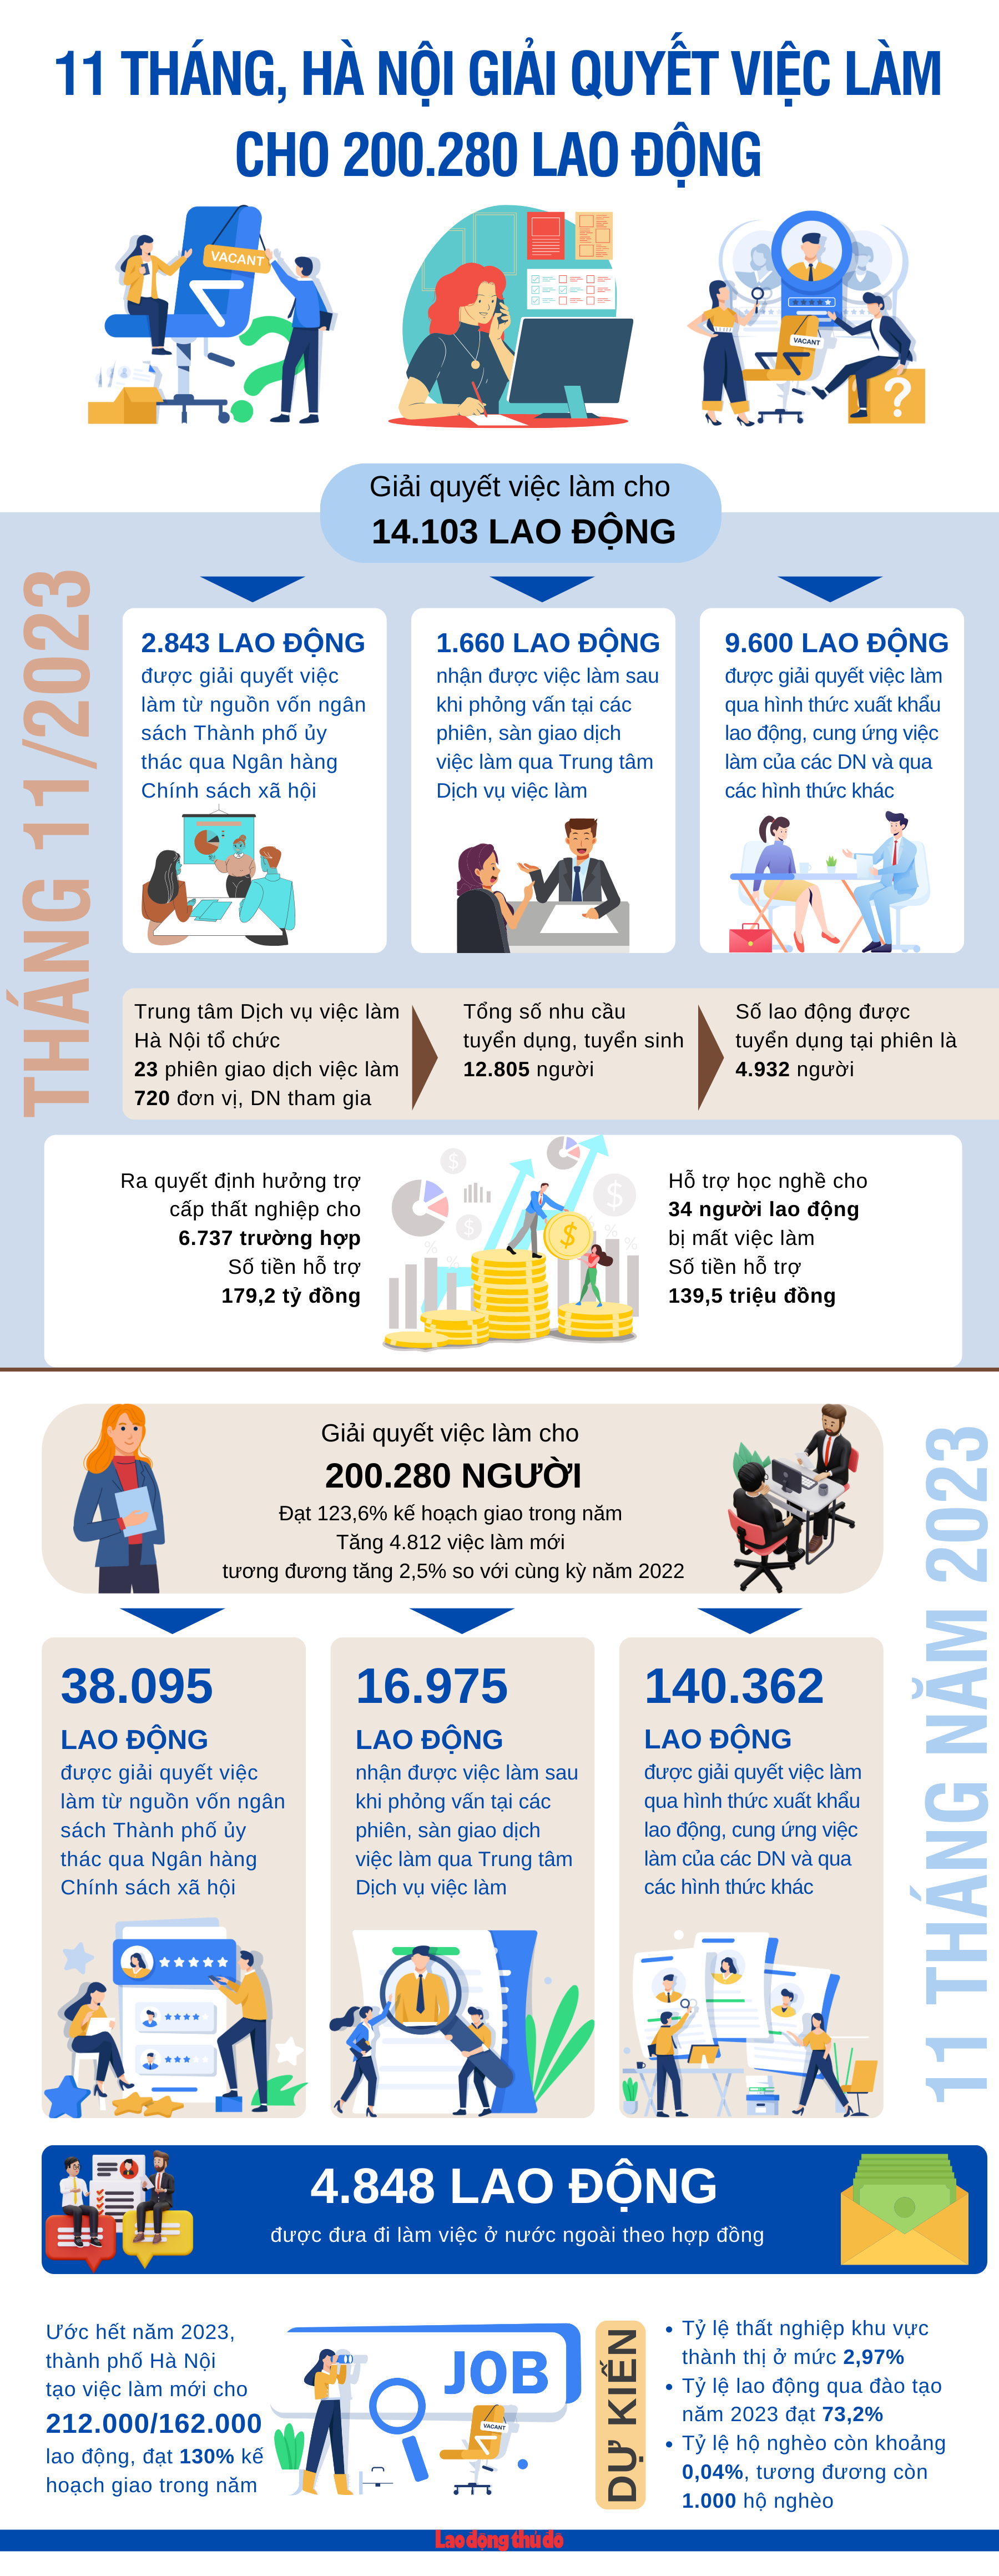 11 tháng, Hà Nội giải quyết việc làm cho 200.280 lao động